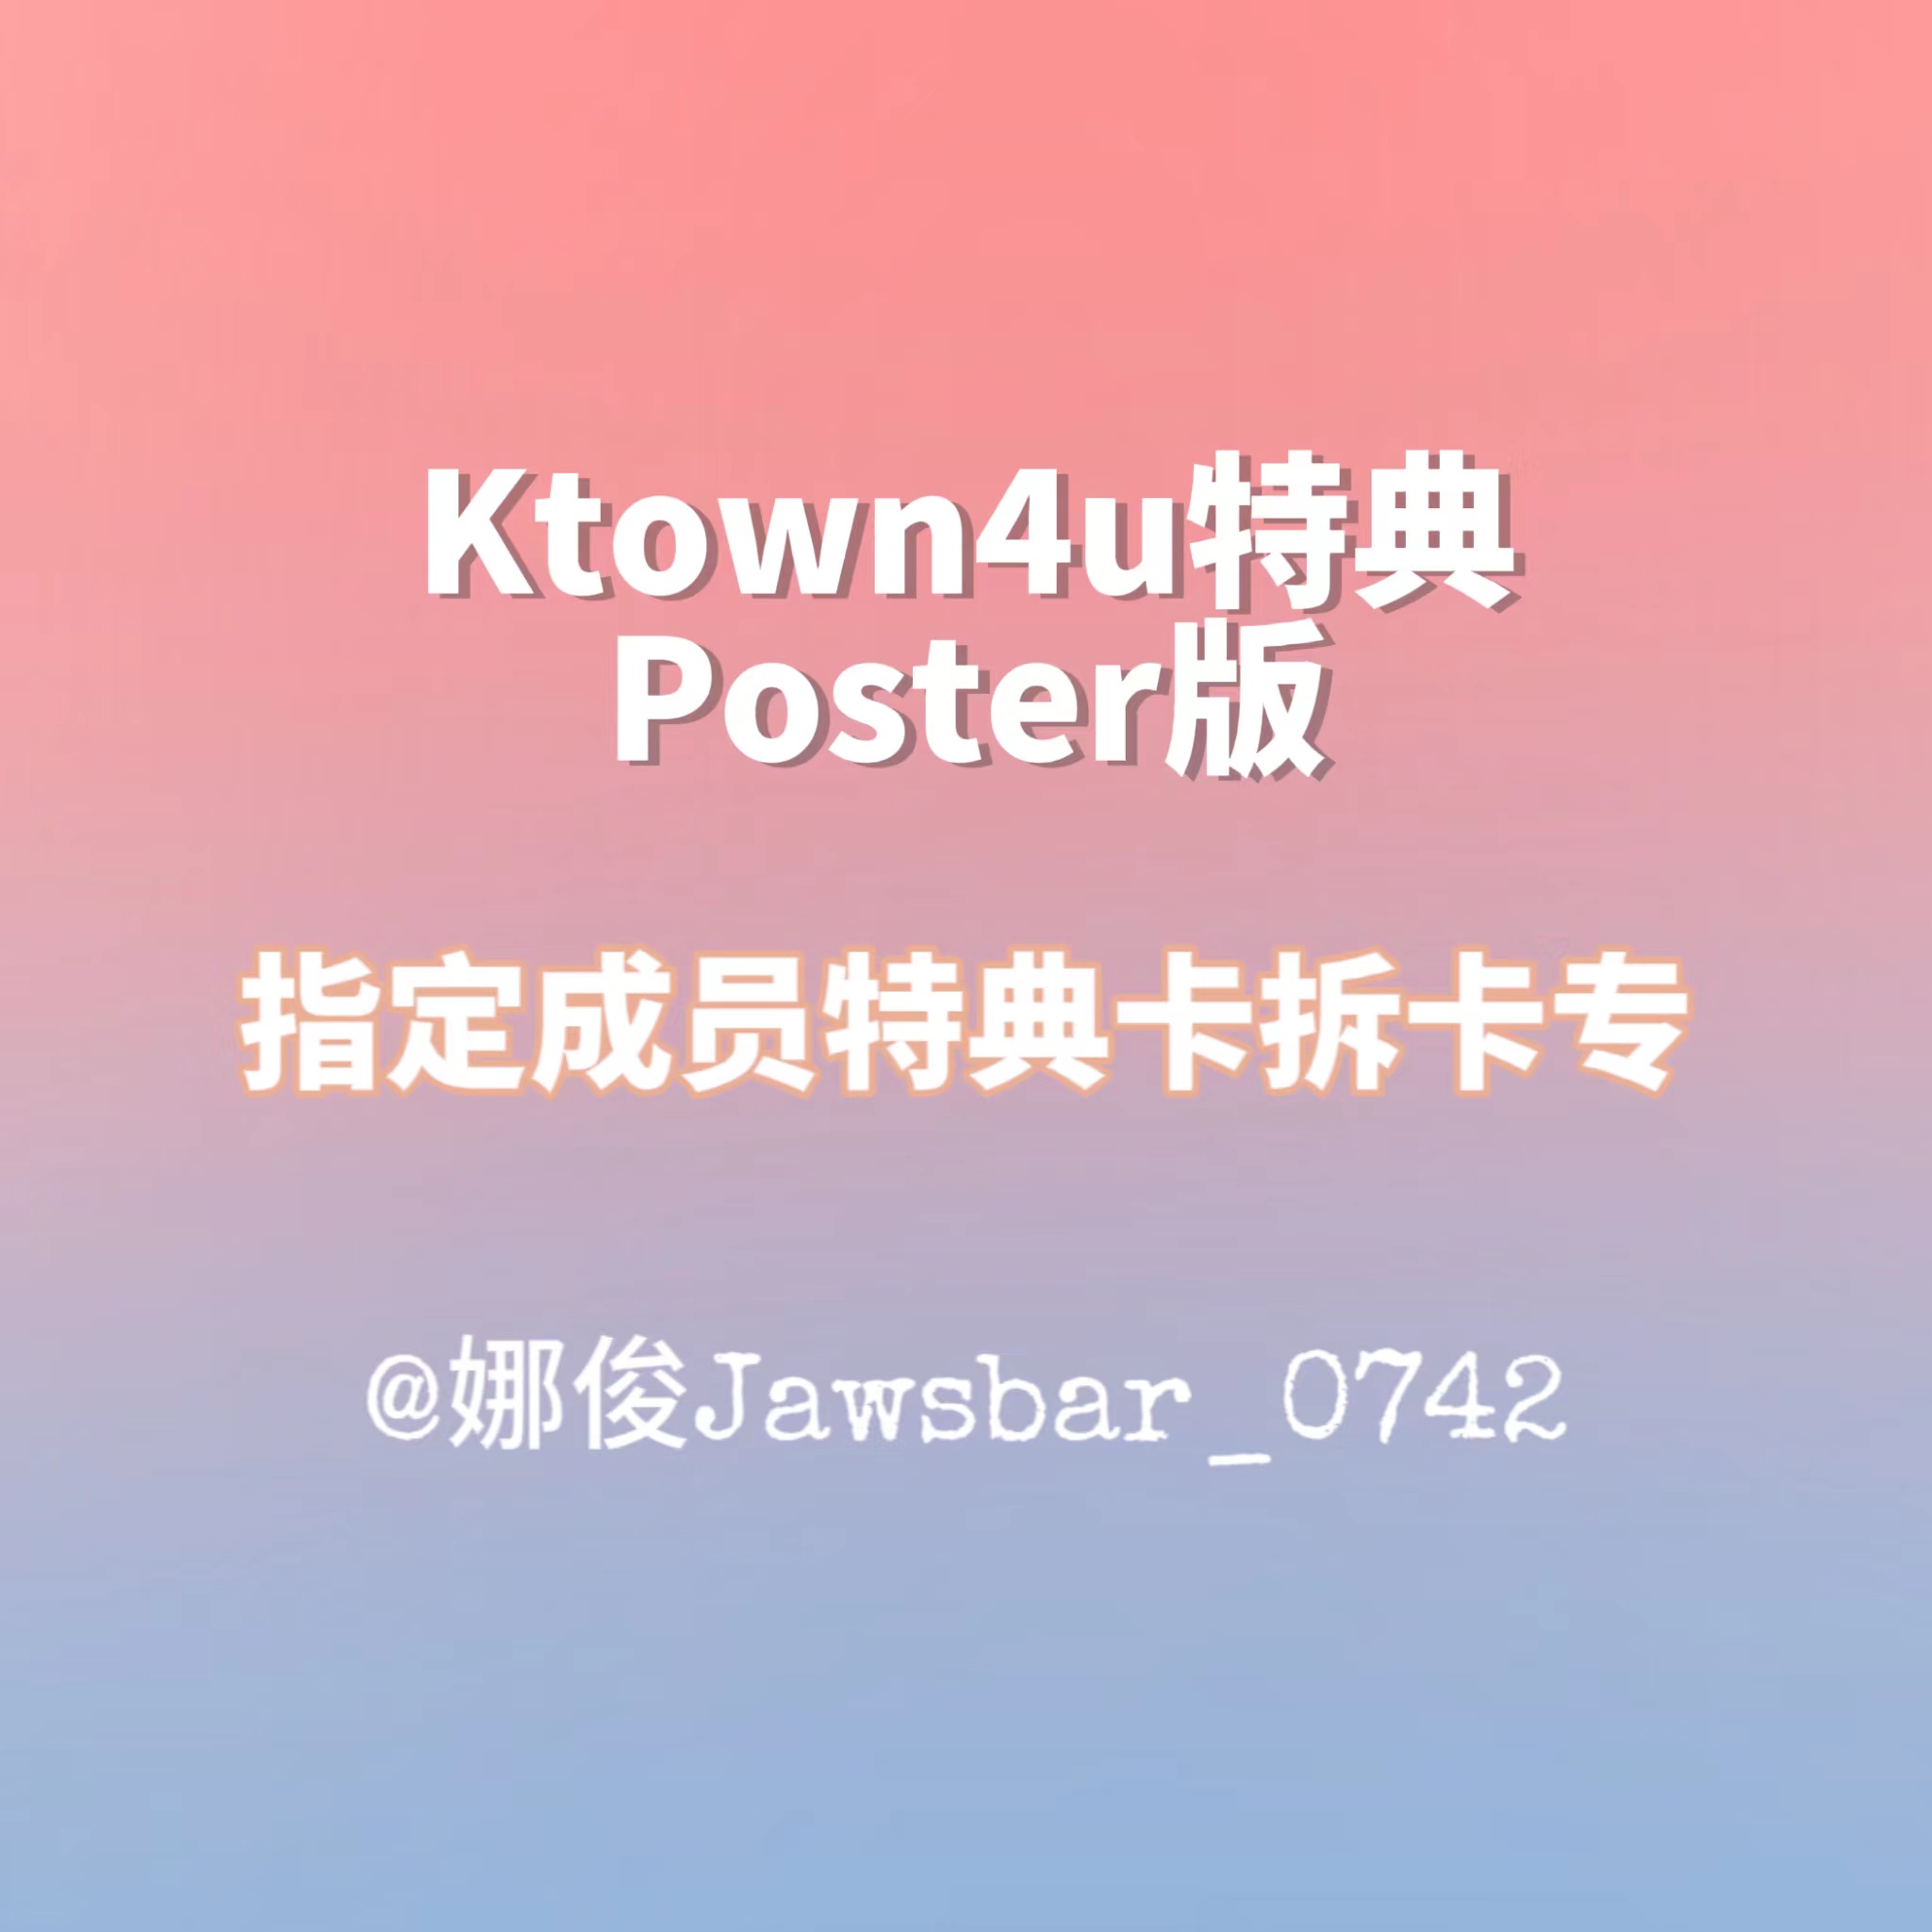 [拆卡专] 【CHENLE】 [Ktown4u Special Gift] NCT DREAM - 正规3辑 [ISTJ] (Poster Ver.) (随机版本)_娜俊Jawsbar_0742